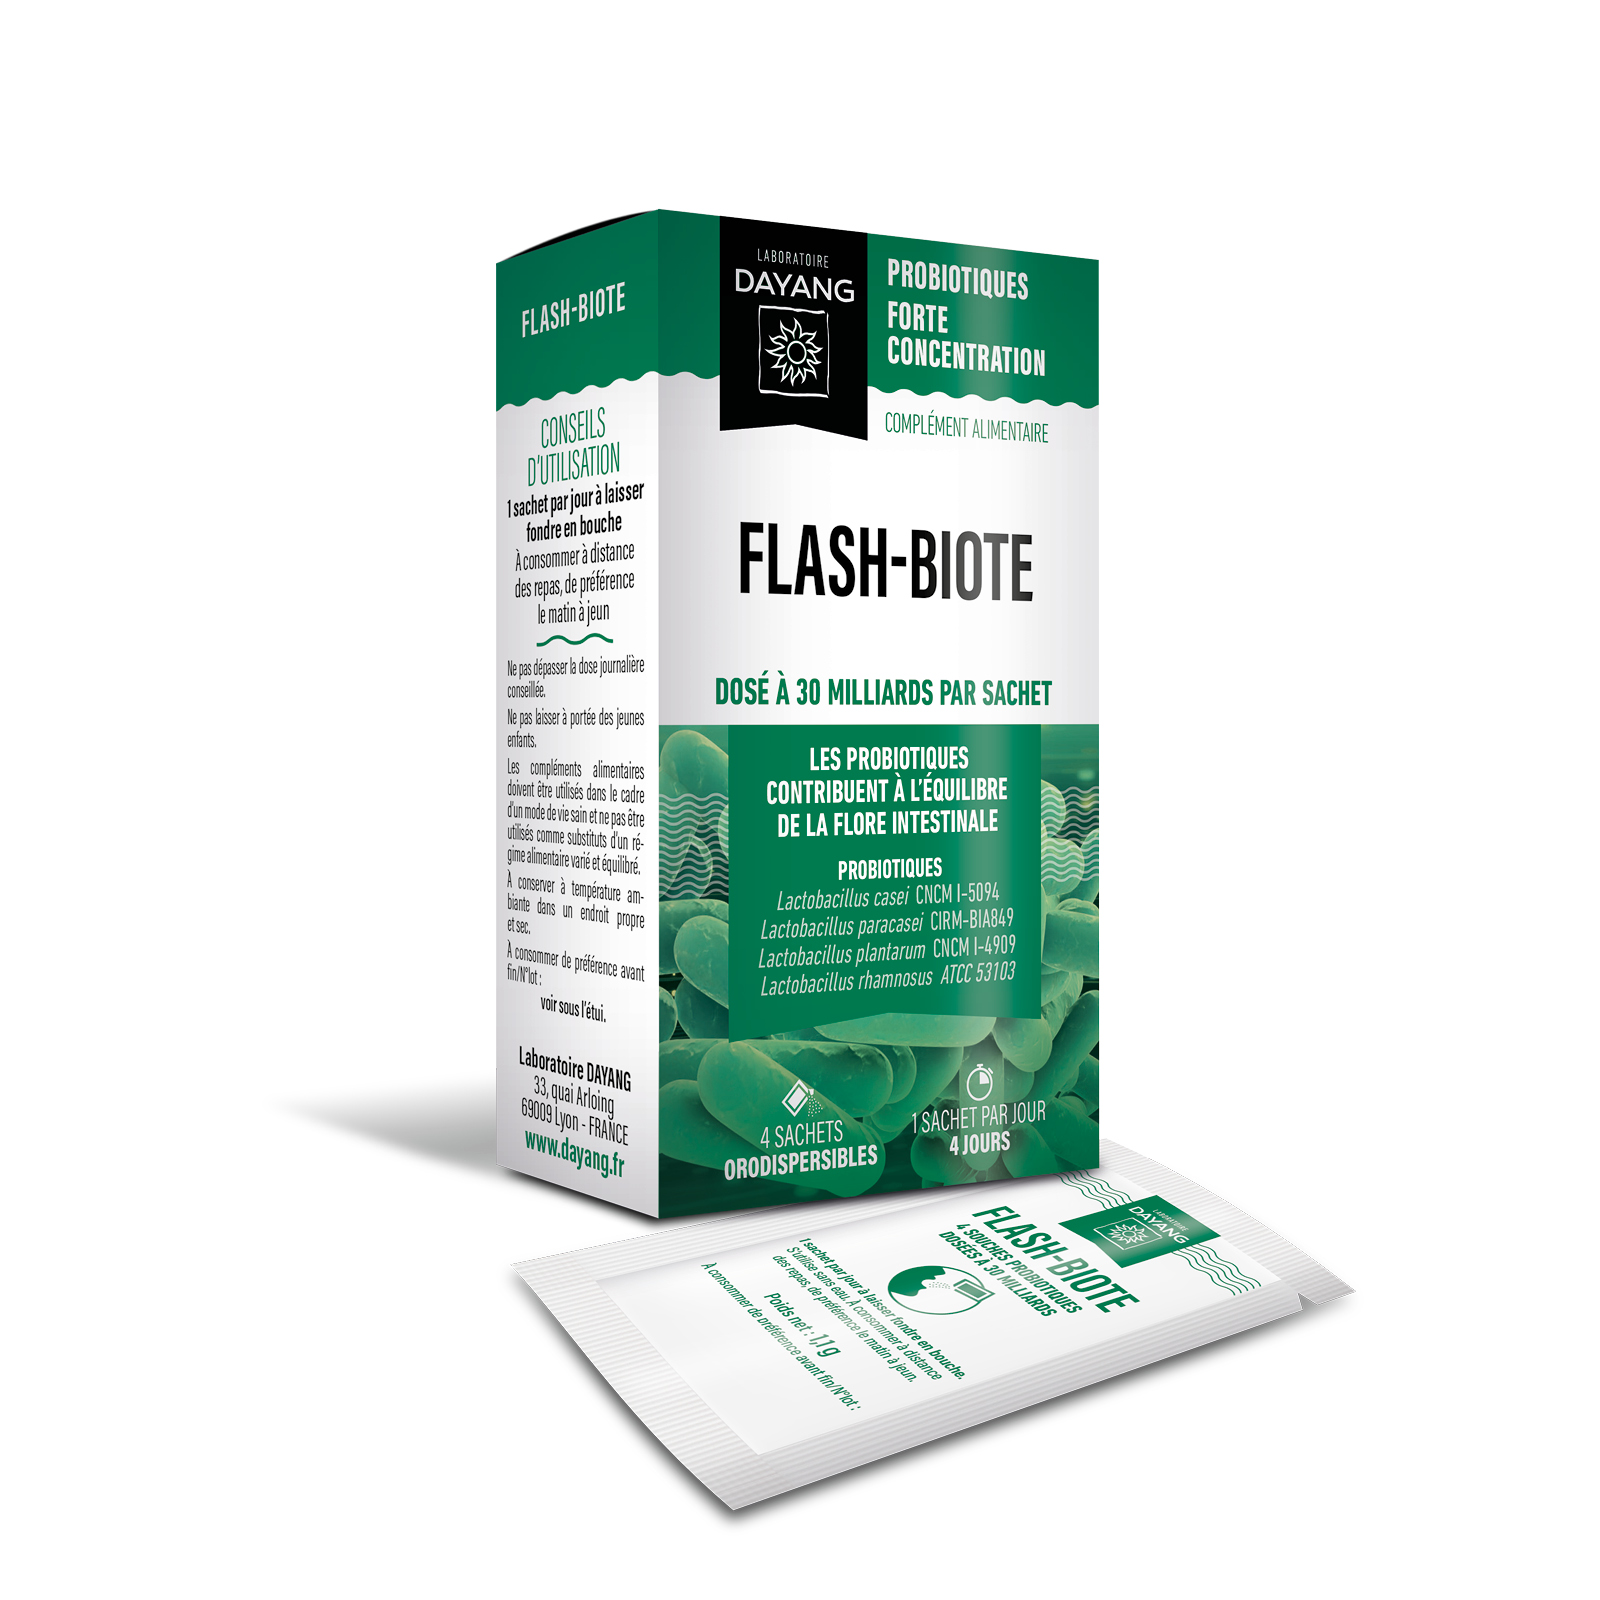 Flash-biote